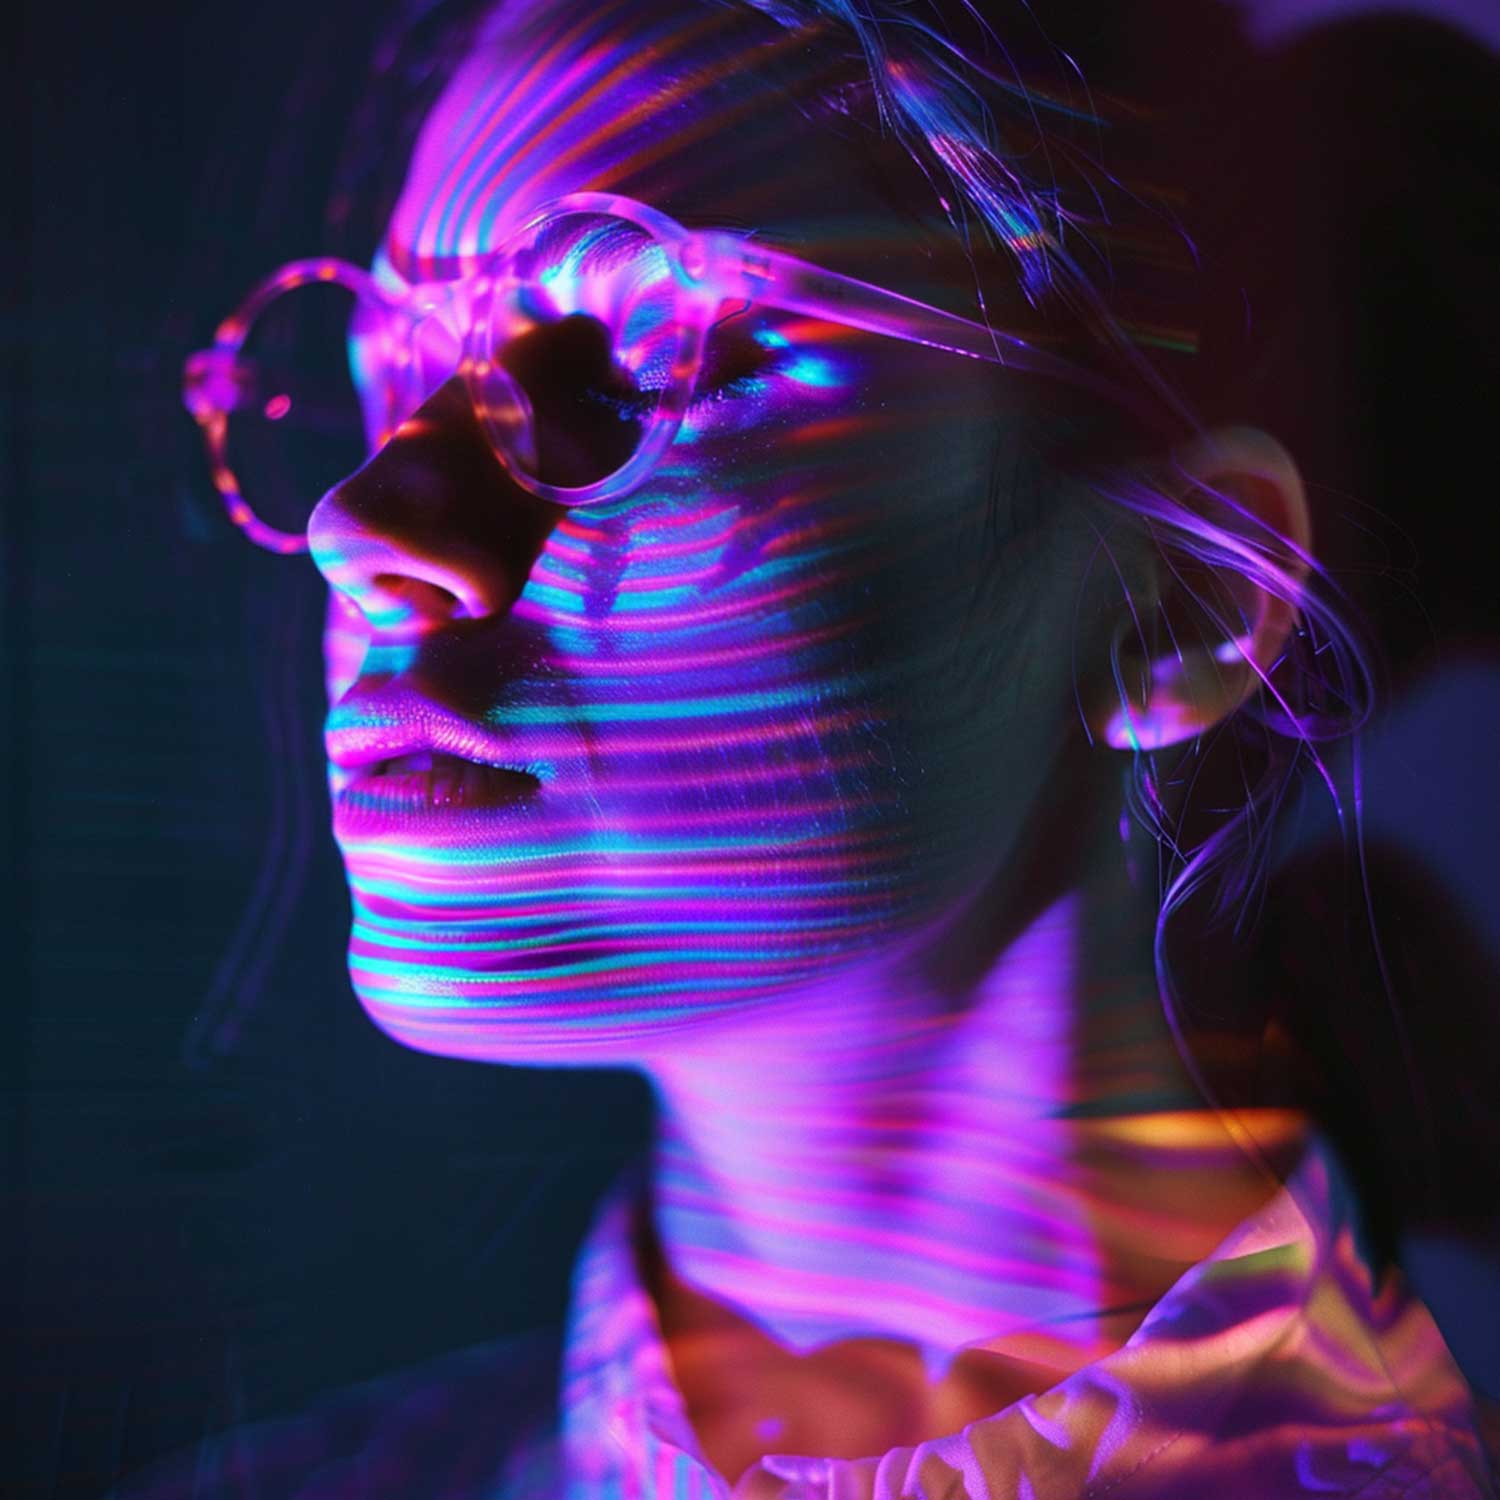 Frau im Profil mit neonfarbenen digitalen Streifen auf ihrem Gesicht.